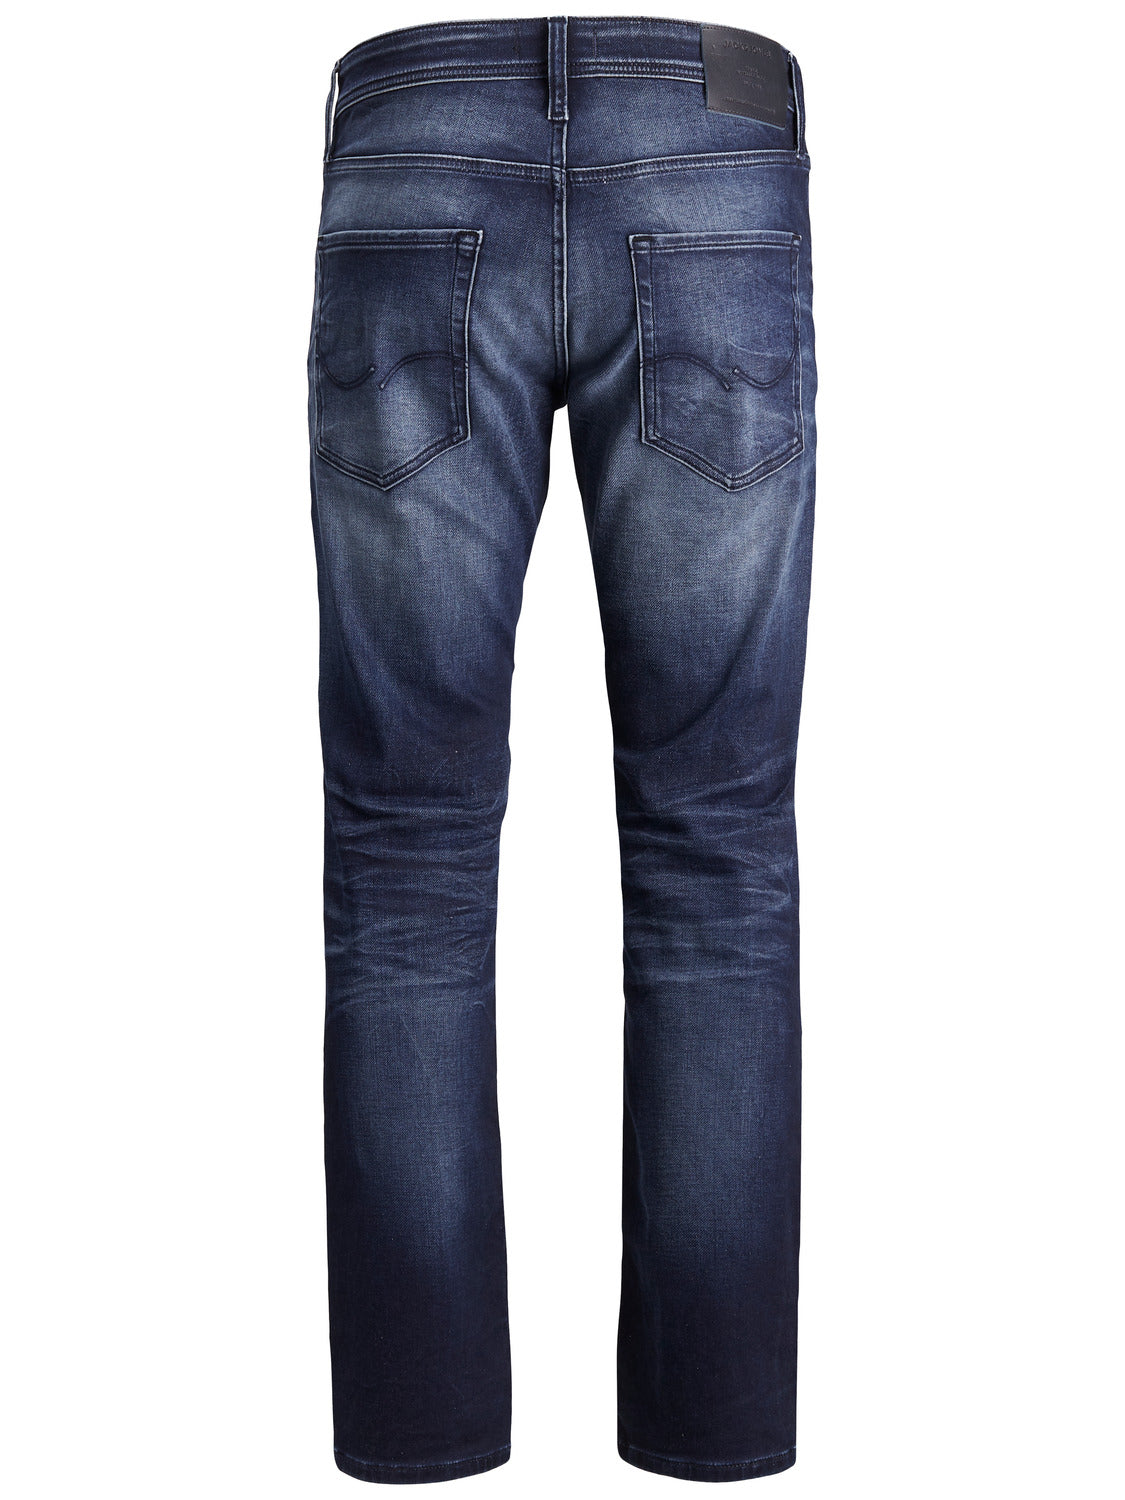 JJIMIKE Jeans - blue denim